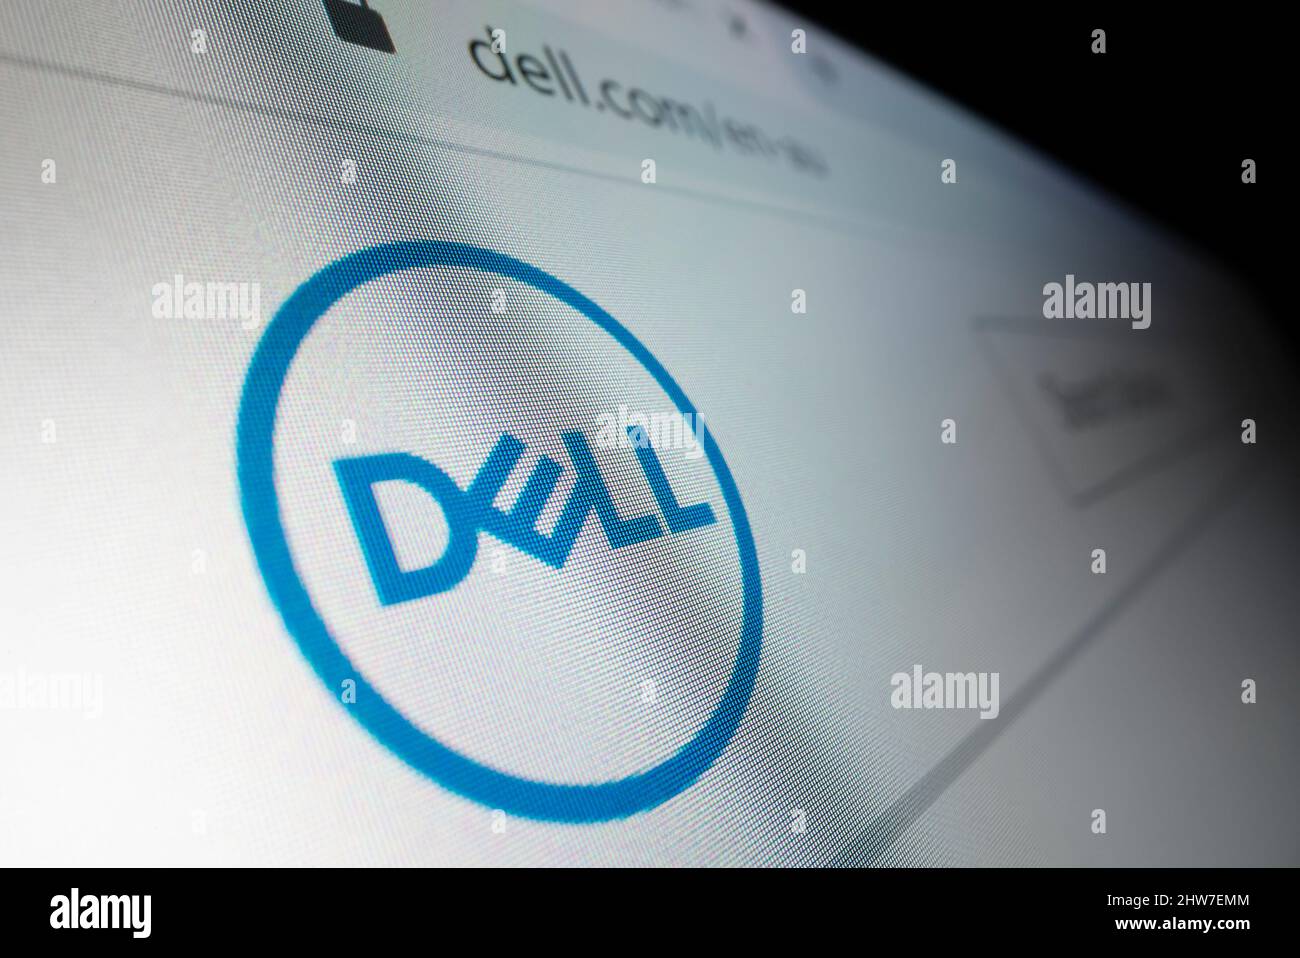 Melbourne, Australien – 8. Juni 2021: Nahaufnahme des Dell-Logos auf seiner Website, aufgenommen mit Makroobjektiv. Stockfoto